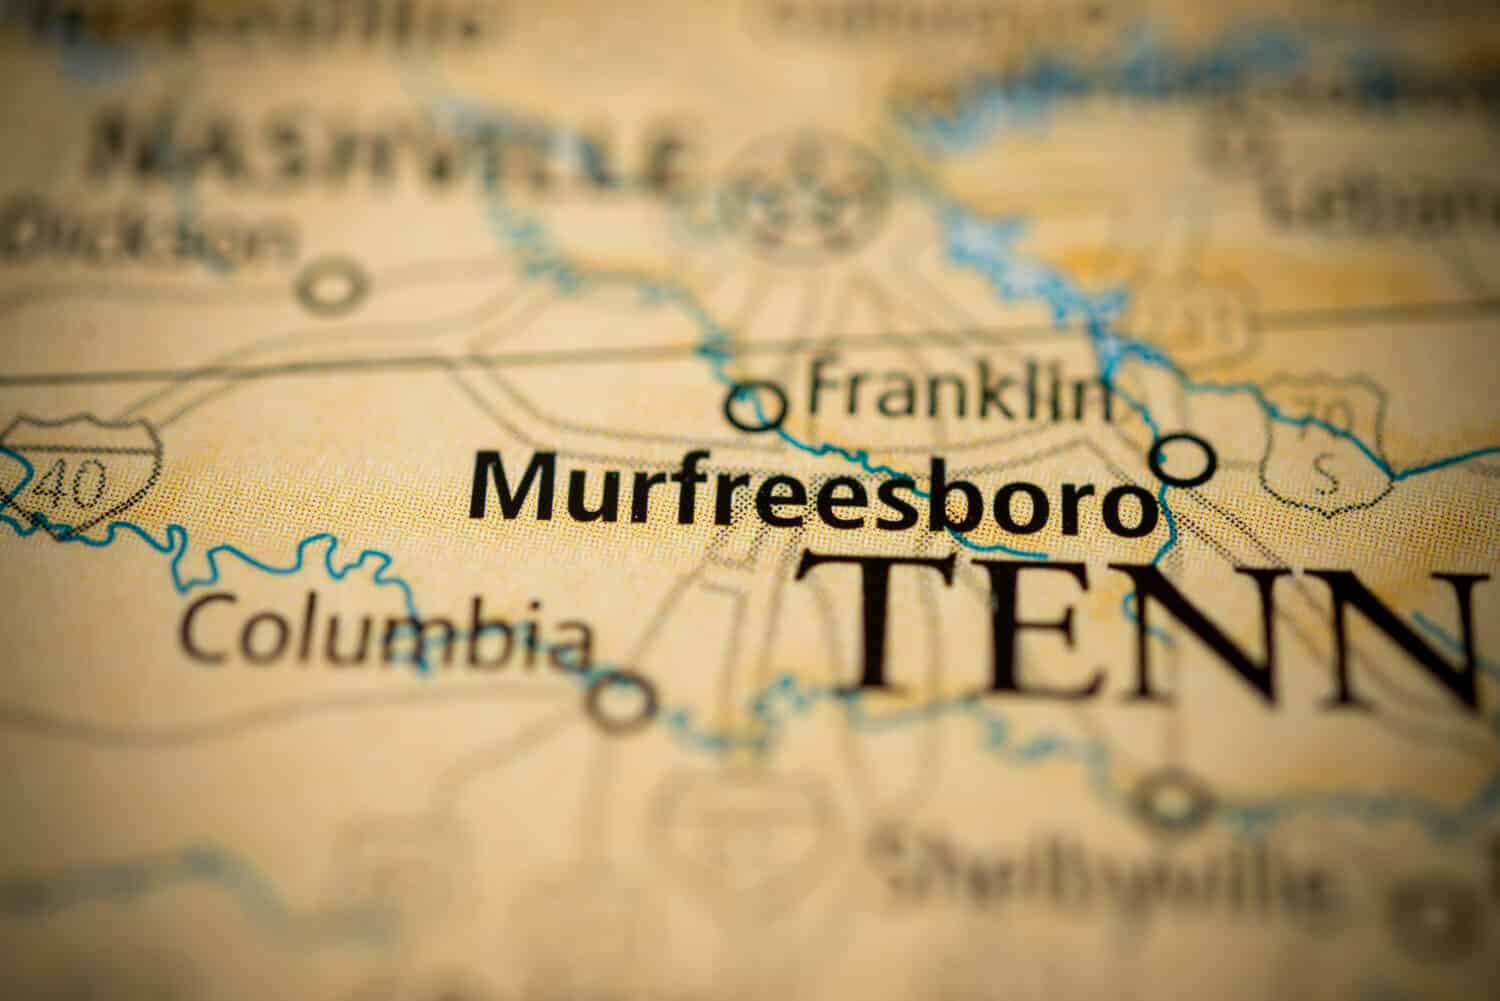 Murfreesboro, Tennessee.